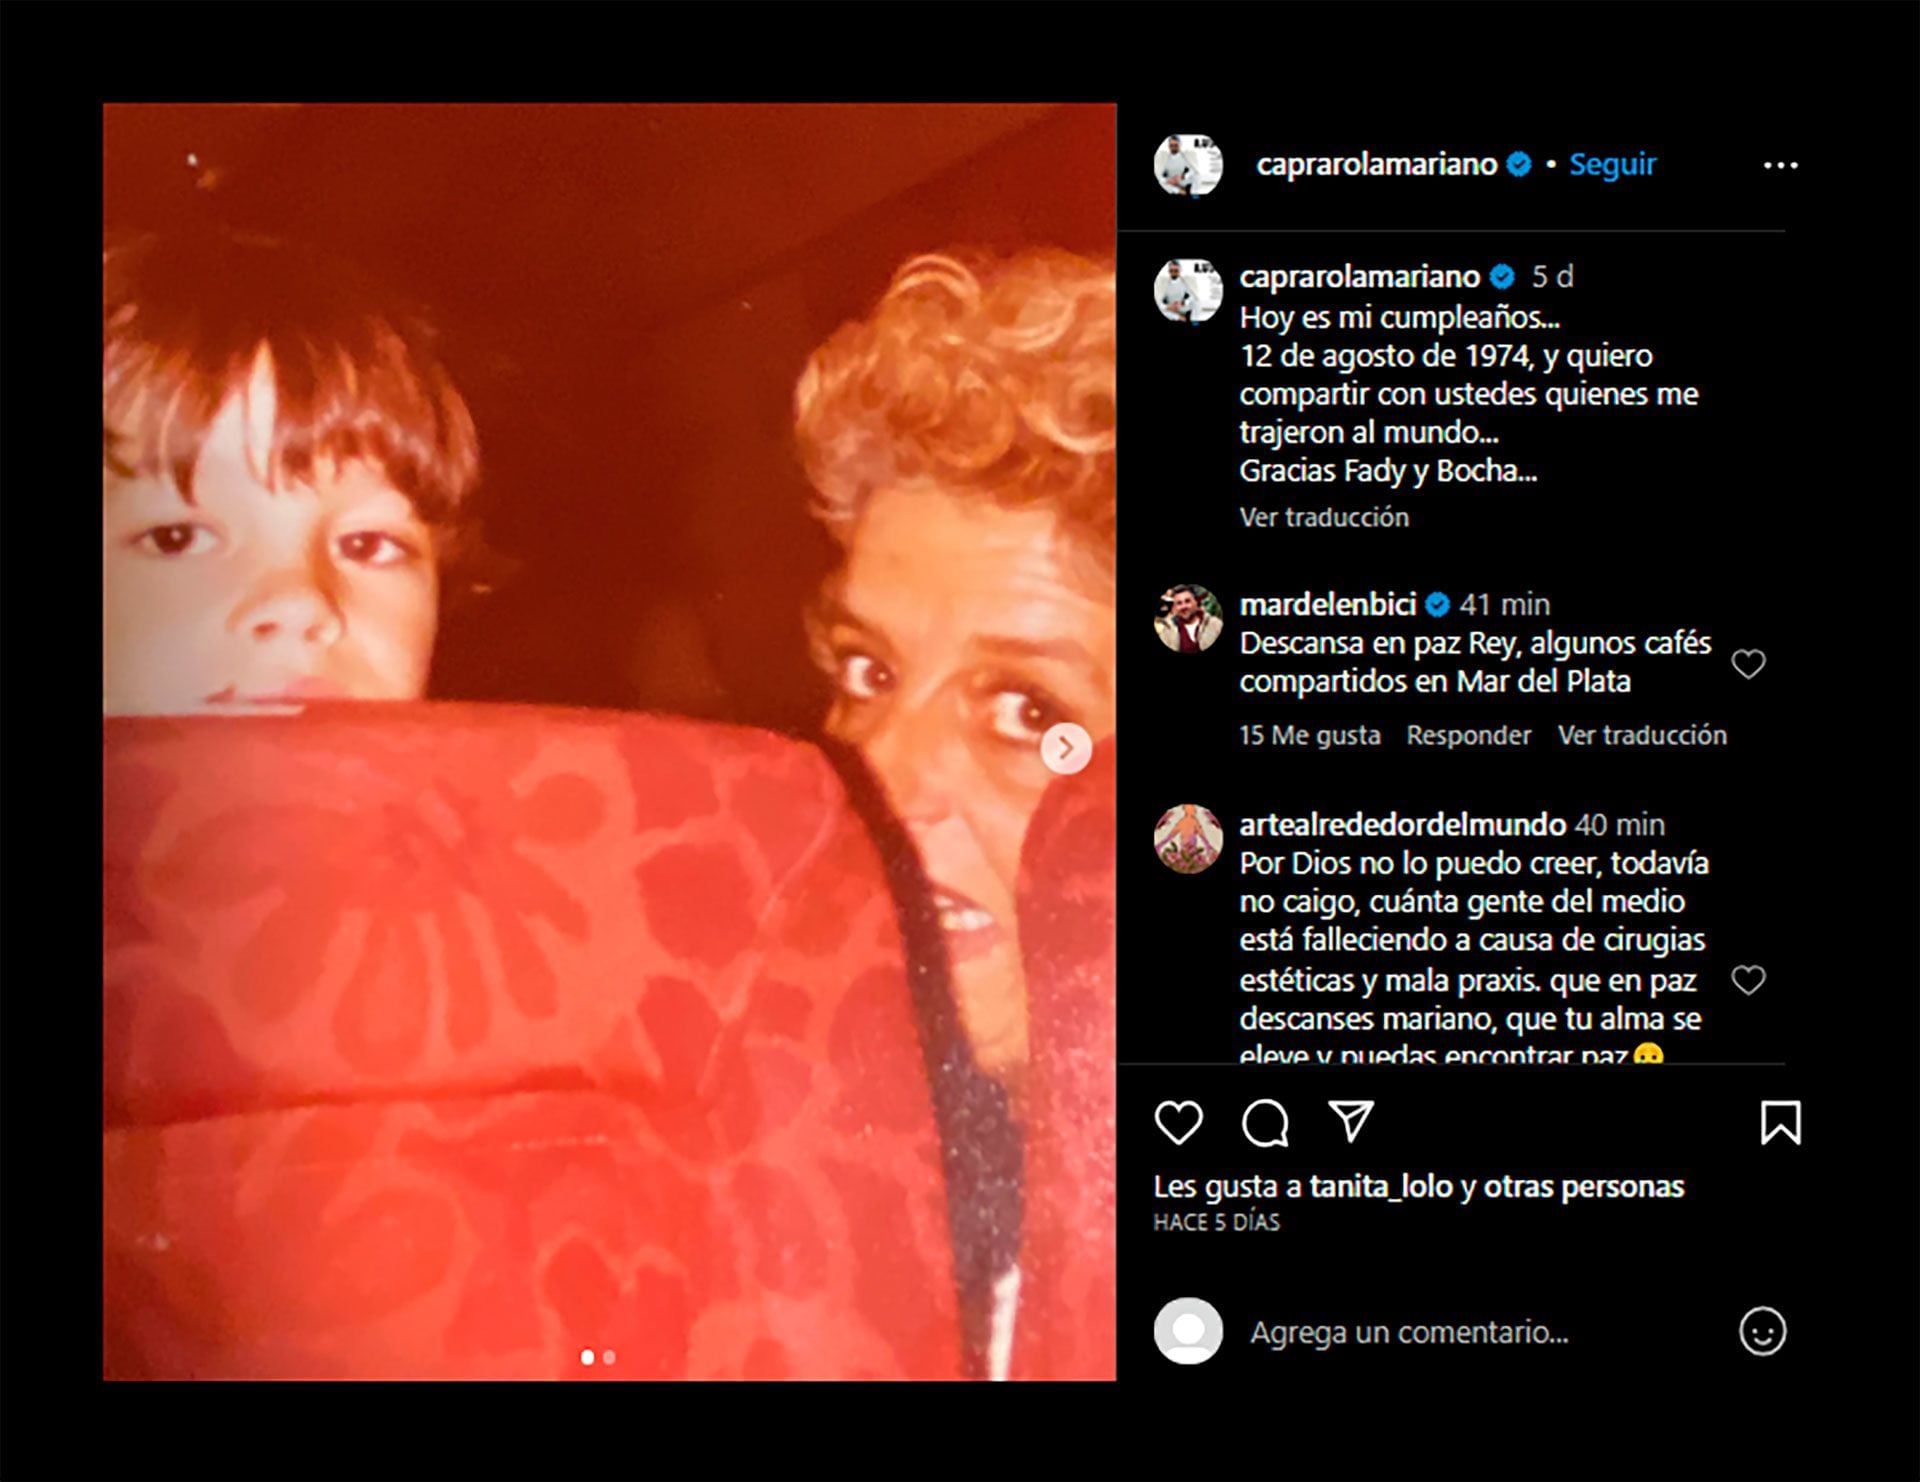 El último mensaje en las redes sociales de Mariano Caprarola antes de morir se lo dedicó a sus padres (Instagram)